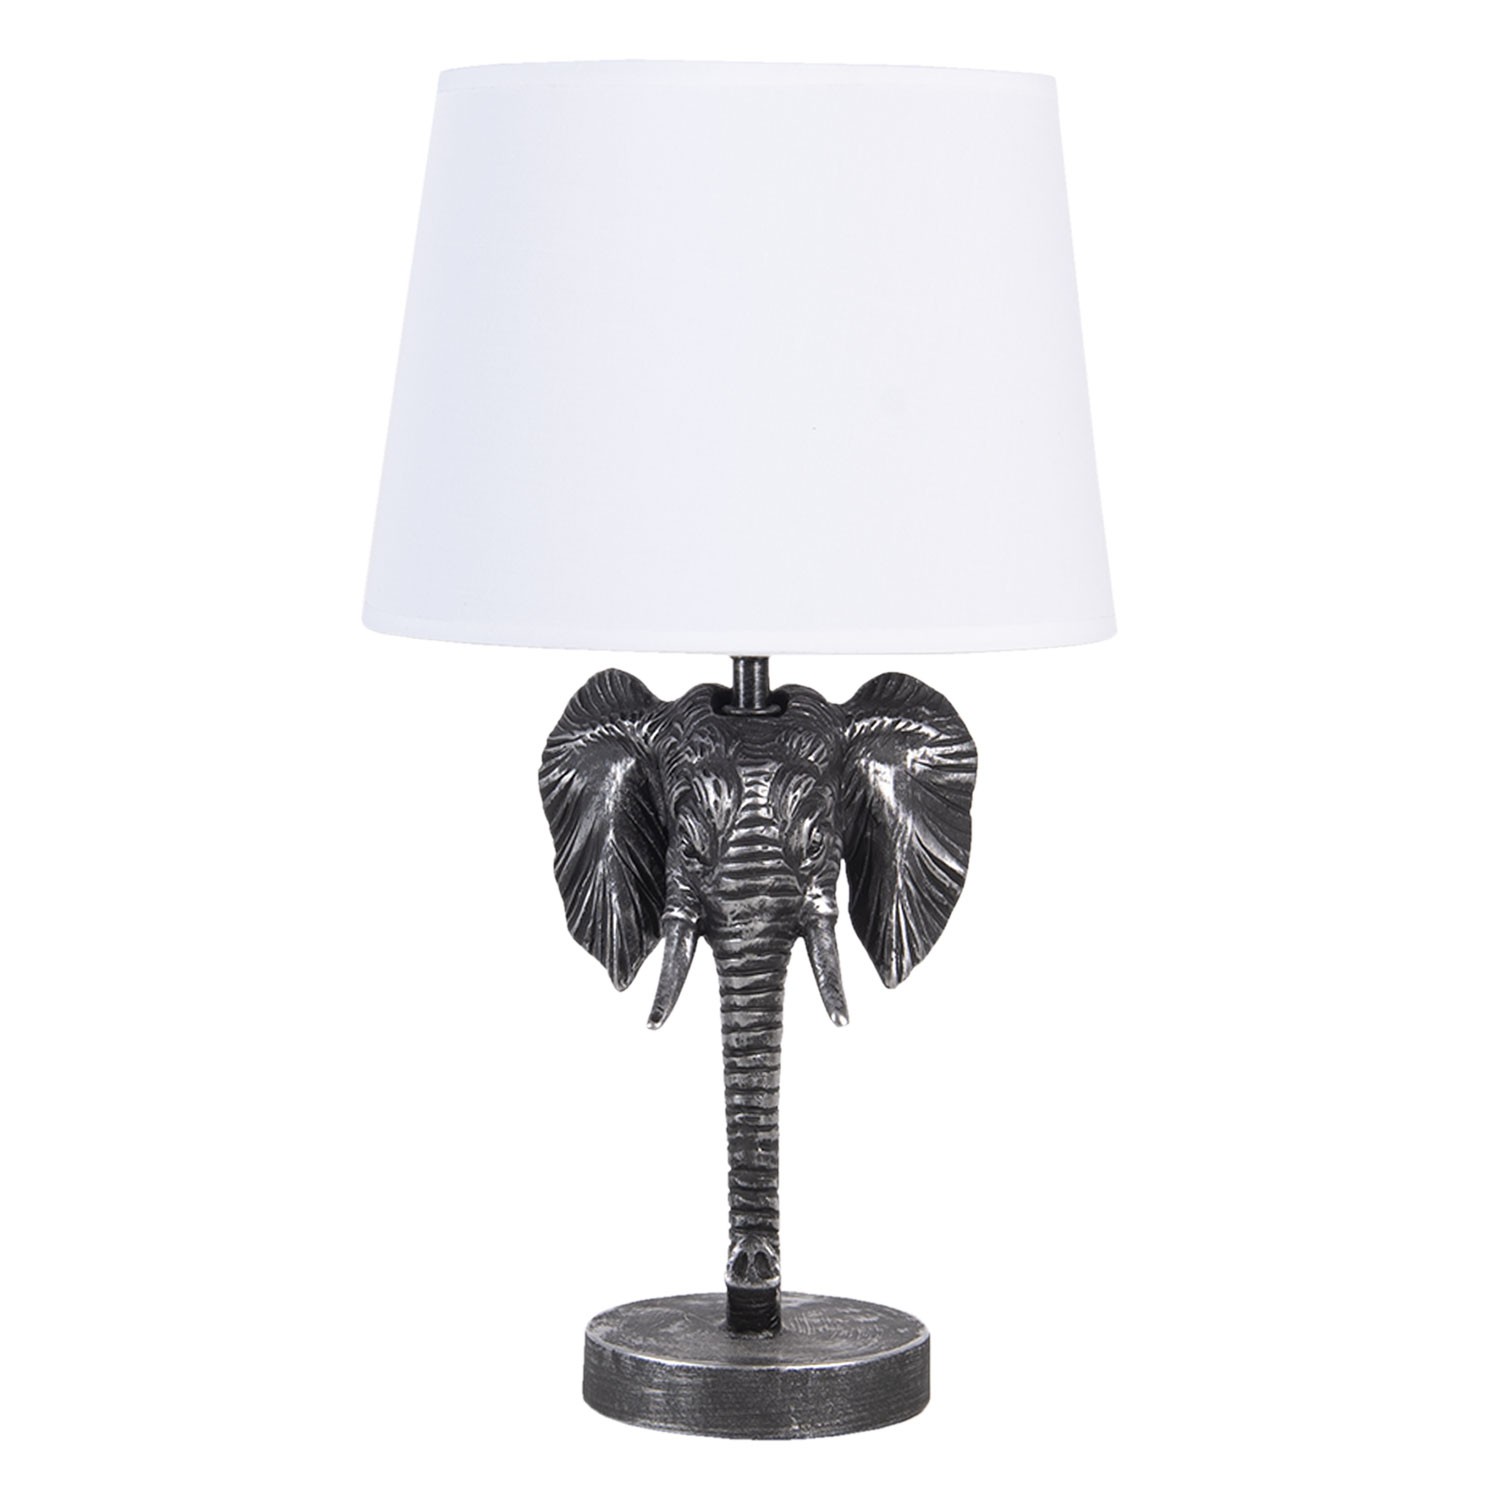 Stříbrno bílá stolní lampa s hlavou slona - 25*25*41 cm E27 Clayre & Eef